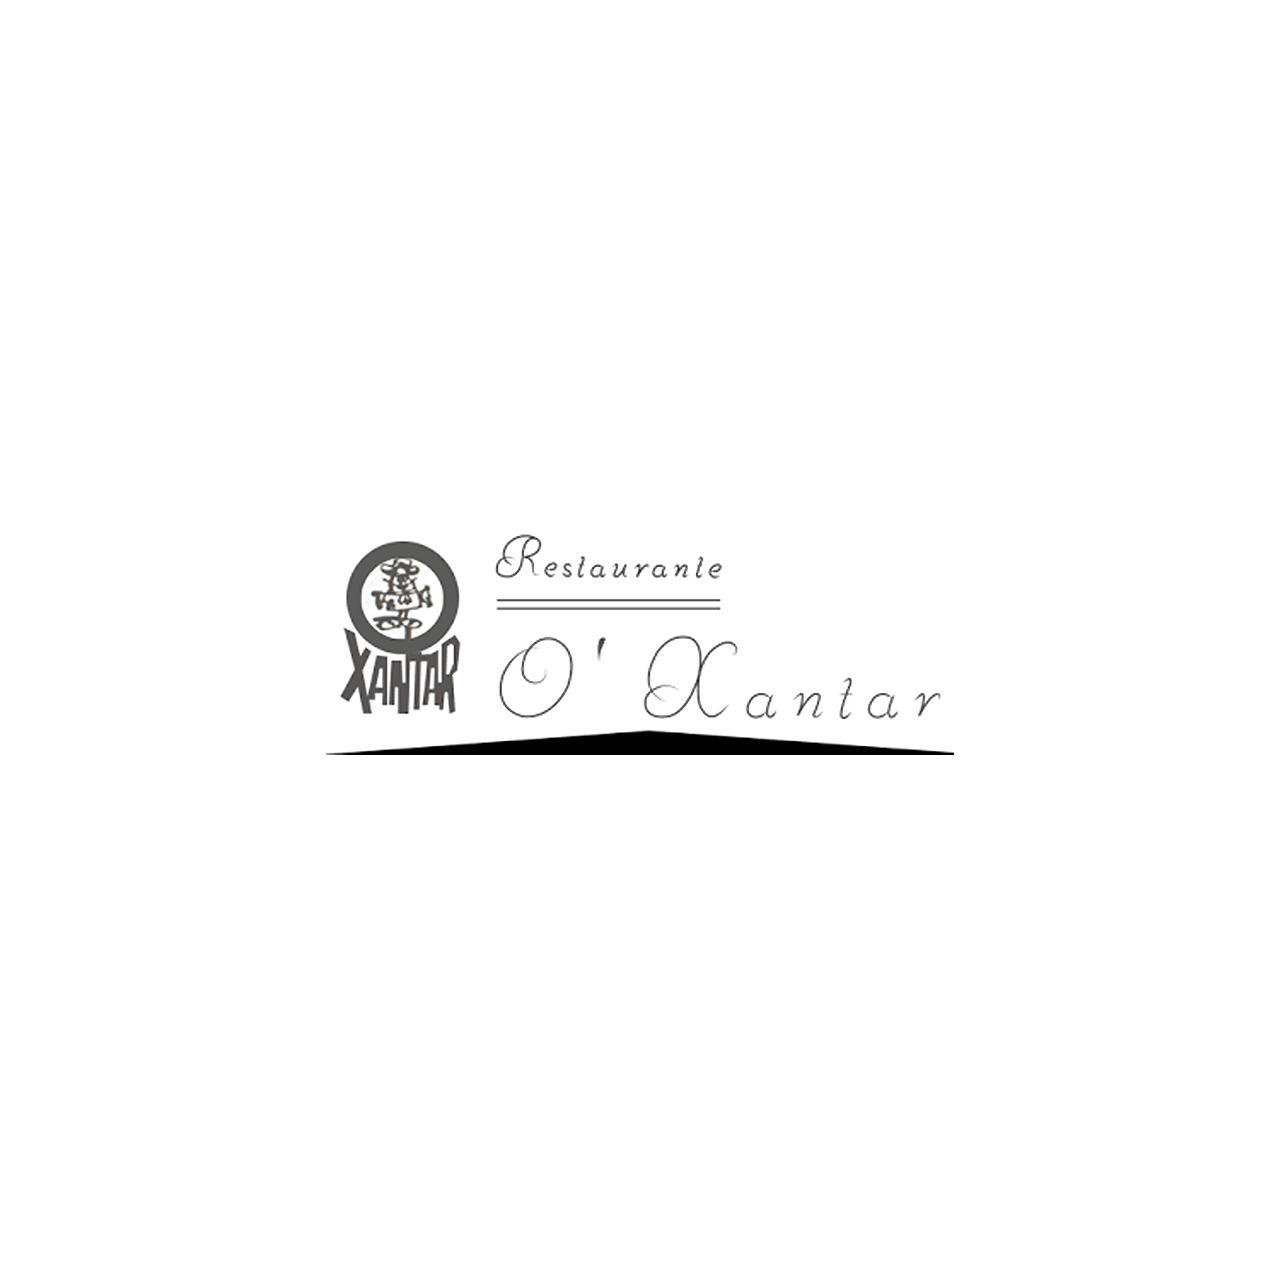 Restaurante O'xantar Logo